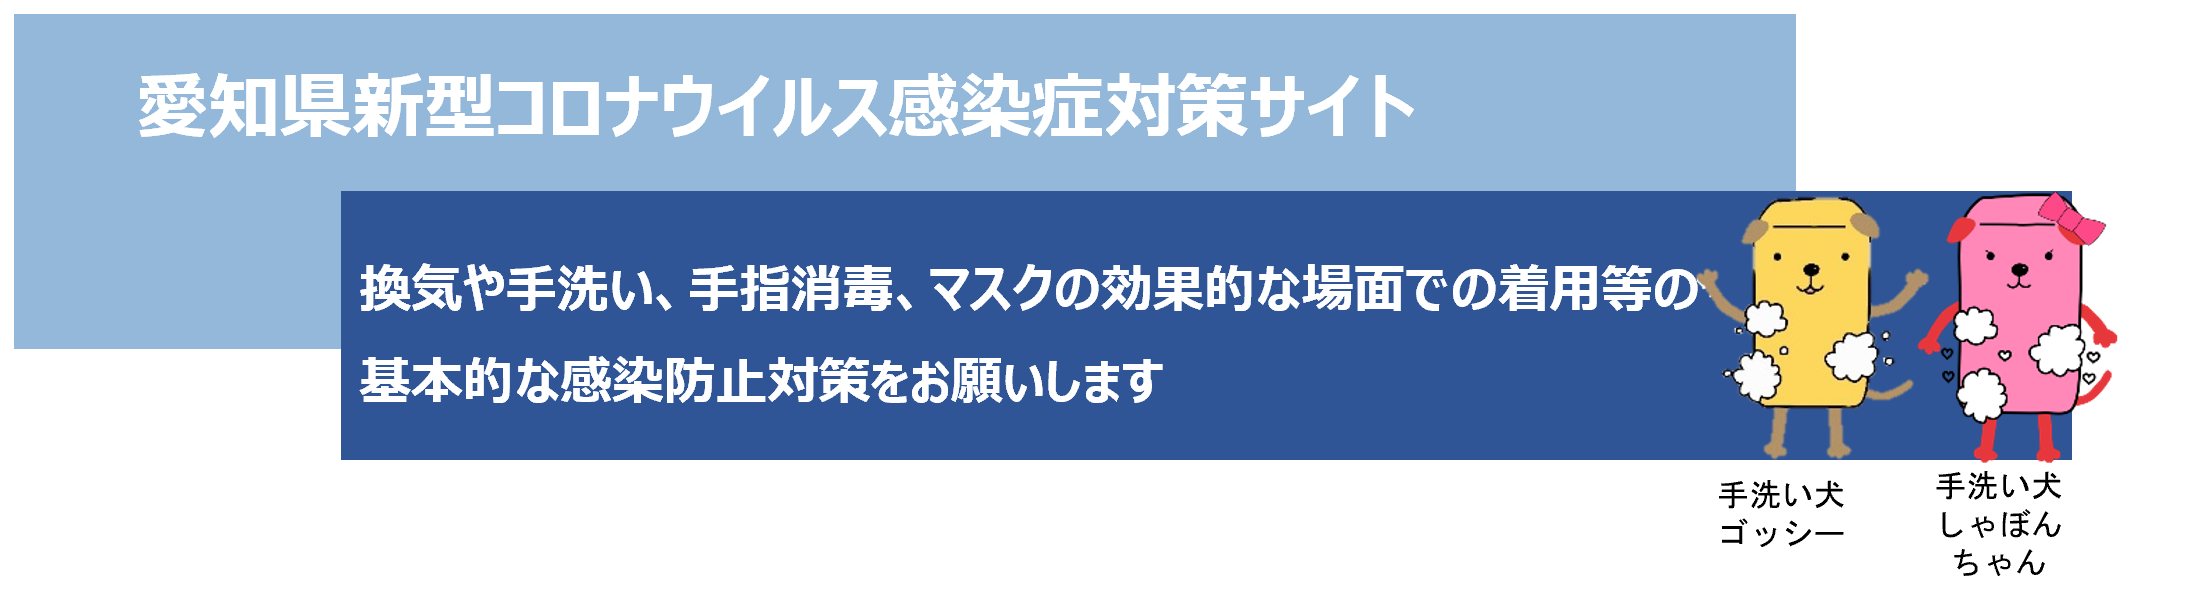 愛知 県 ウイルス 名古屋 市 コロナ 新型コロナウイルス感染症の軽症者等宿泊療養施設について